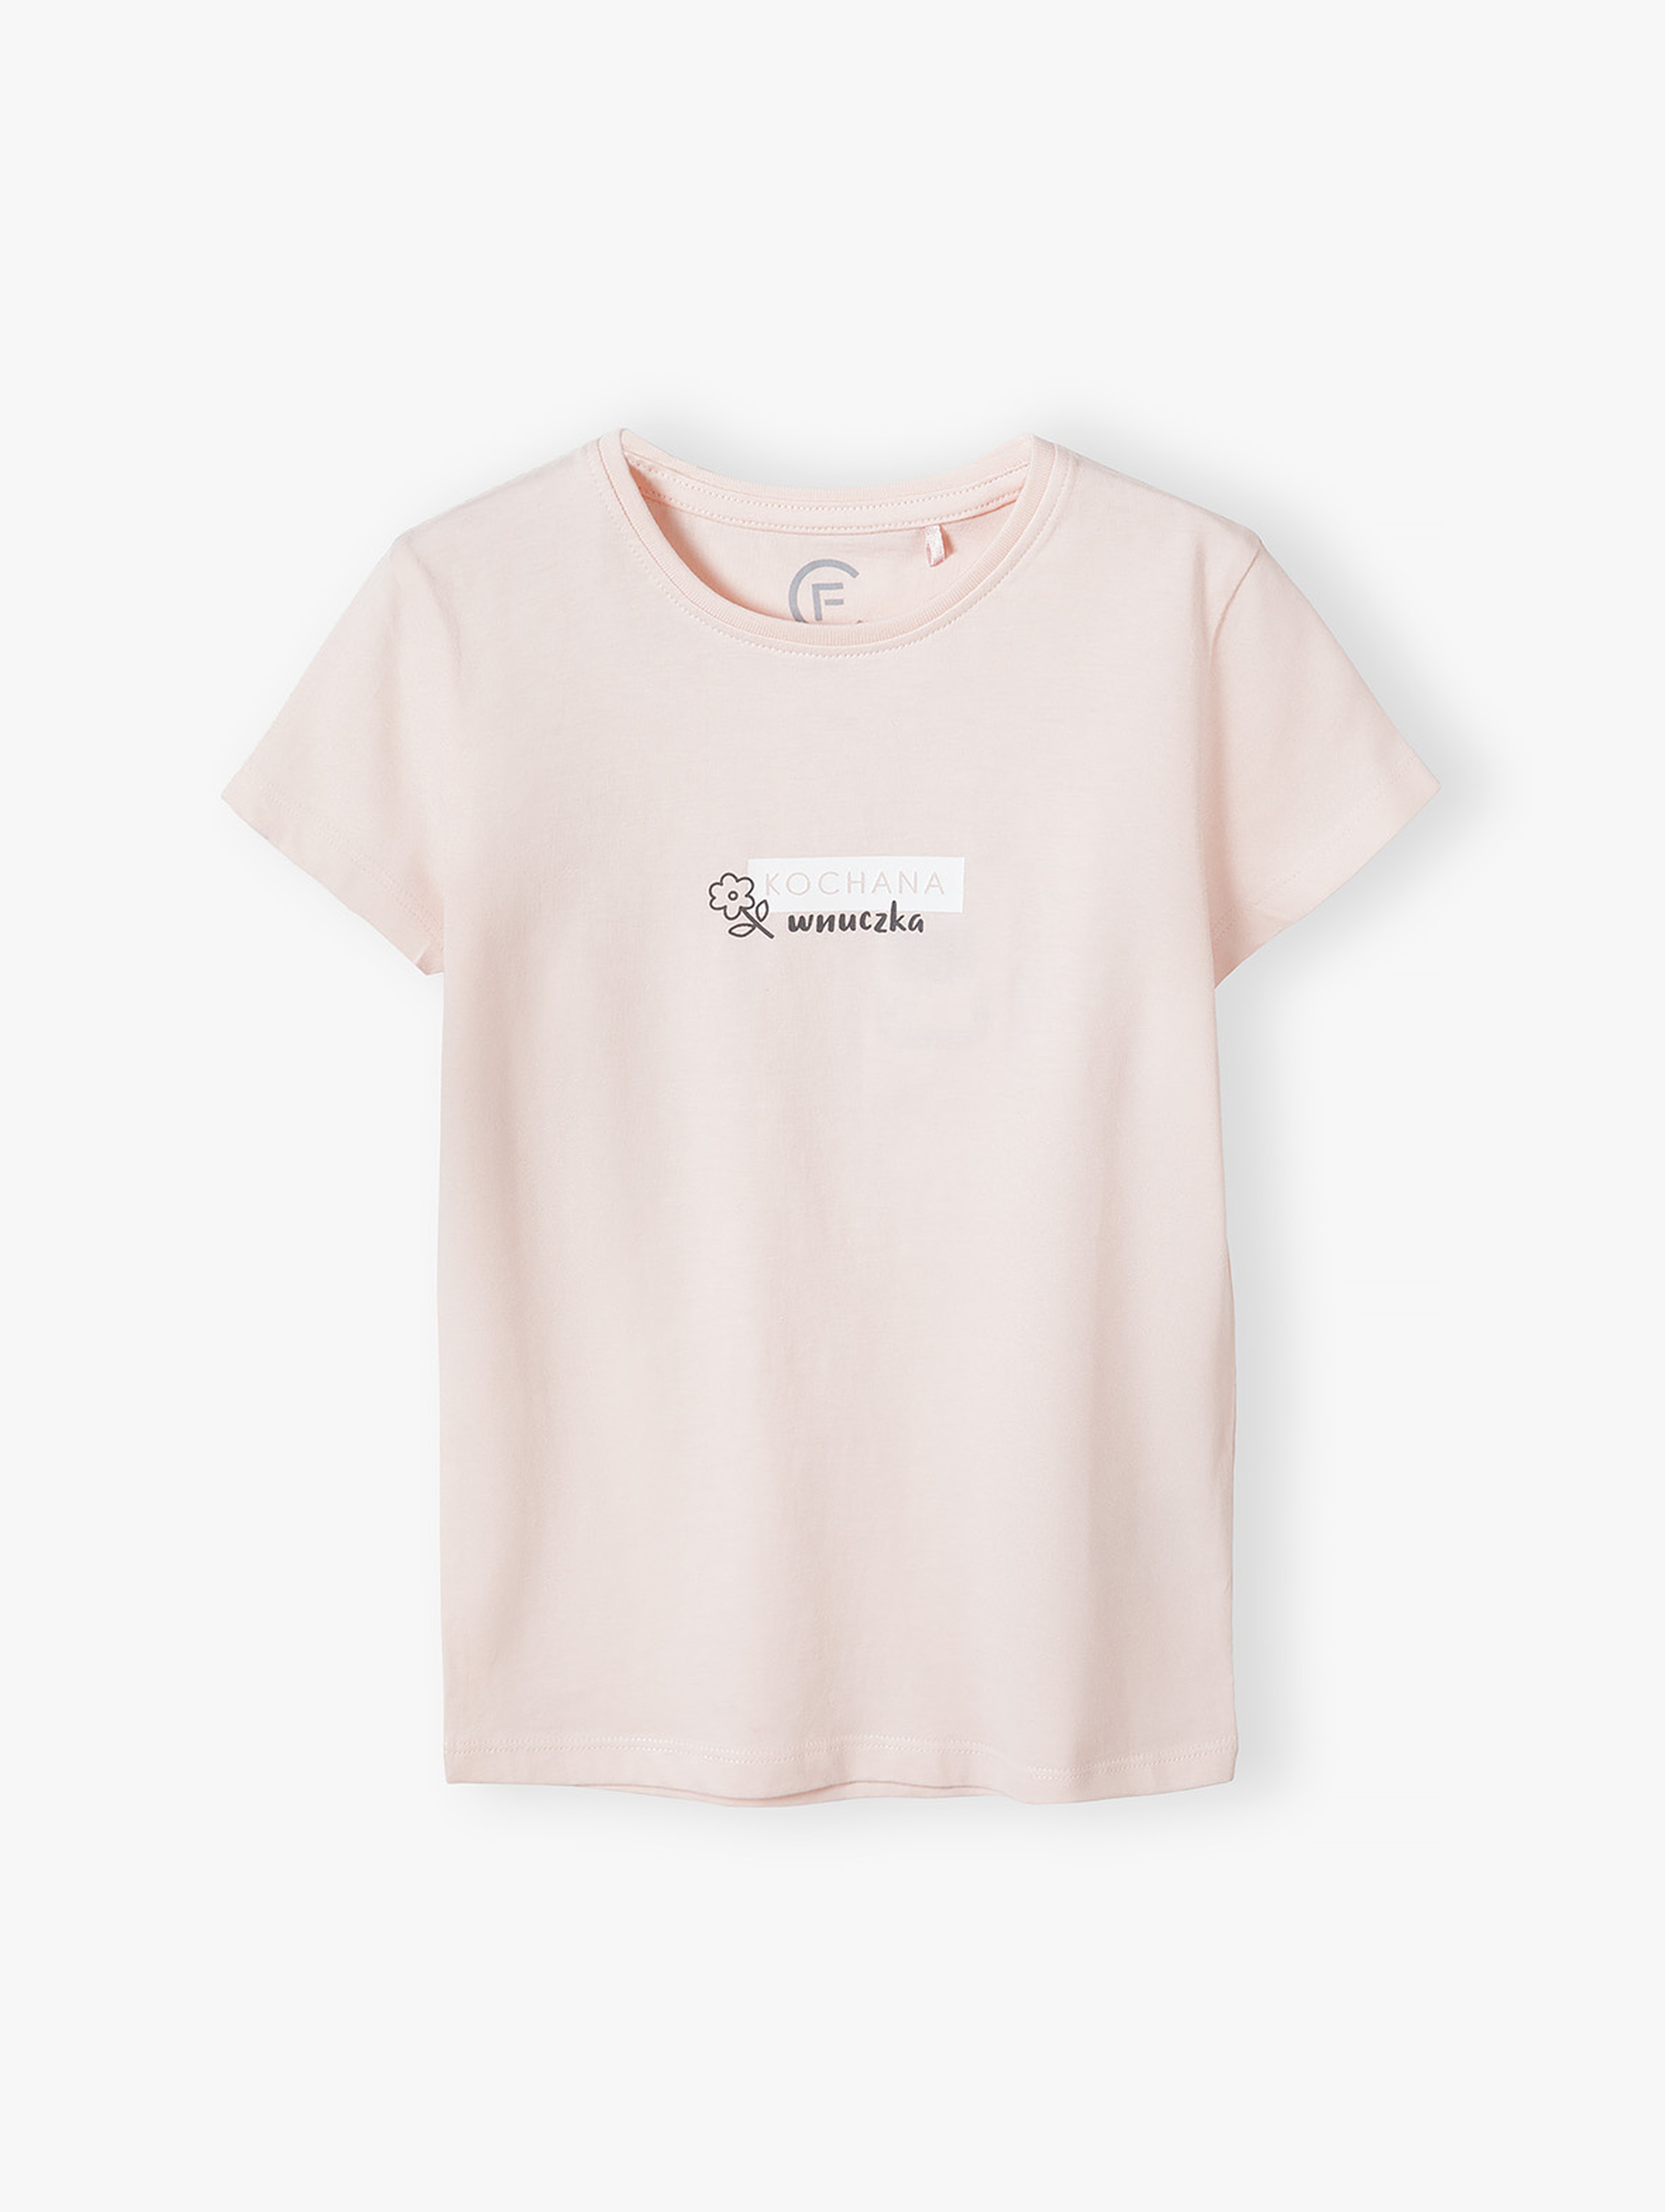 Różowy t-shirt dla dziewczynki - Kochana Wnuczka